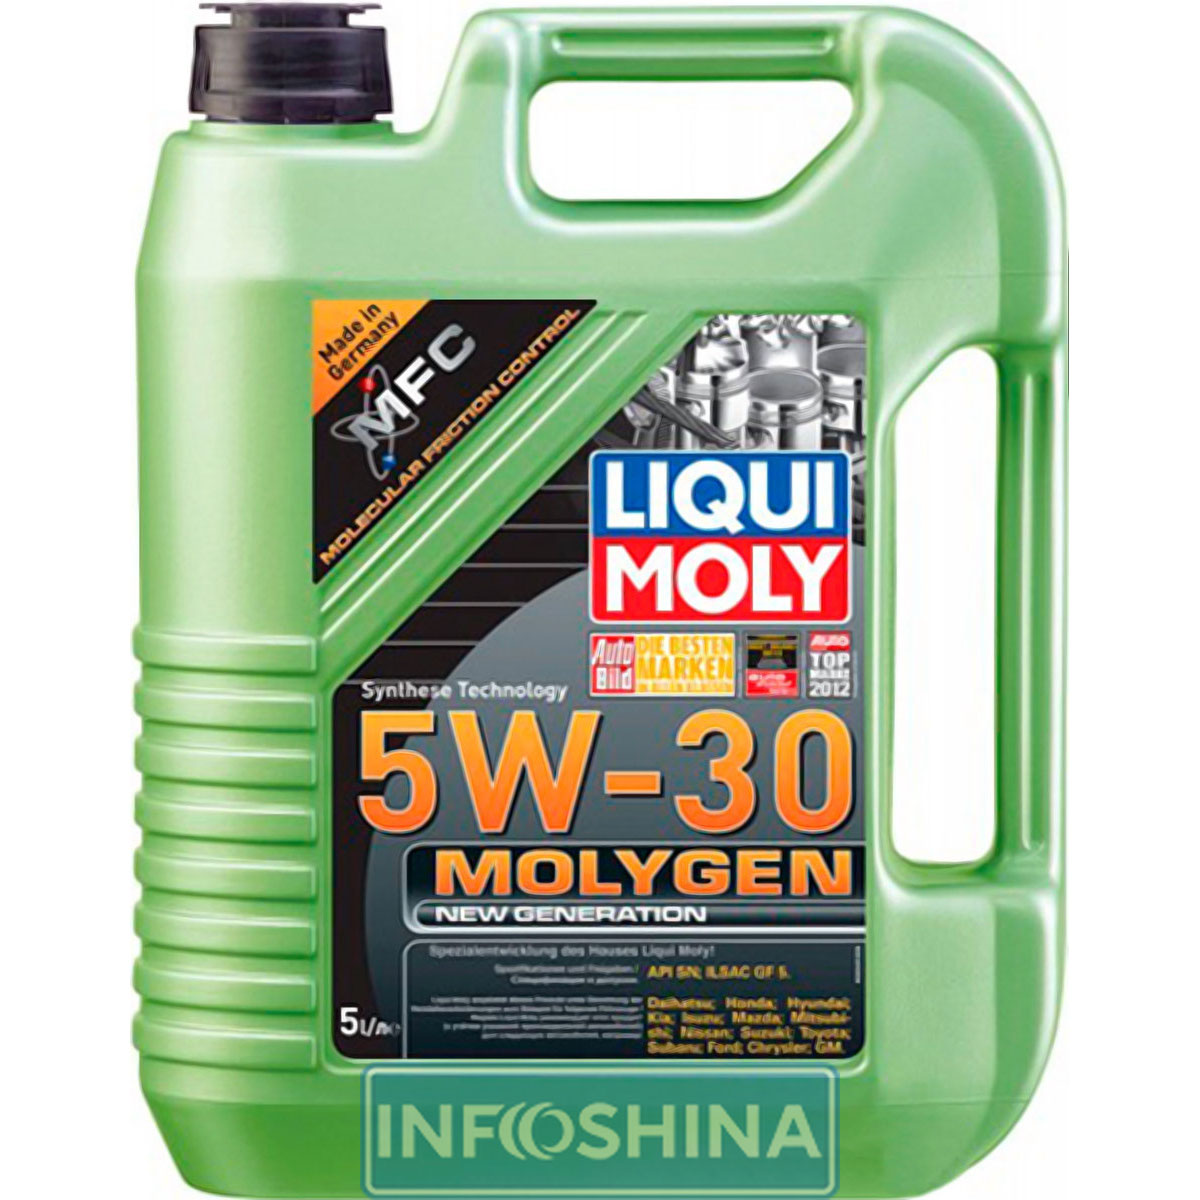 Liqui Moly Molygen New Generation DPF 5W-30